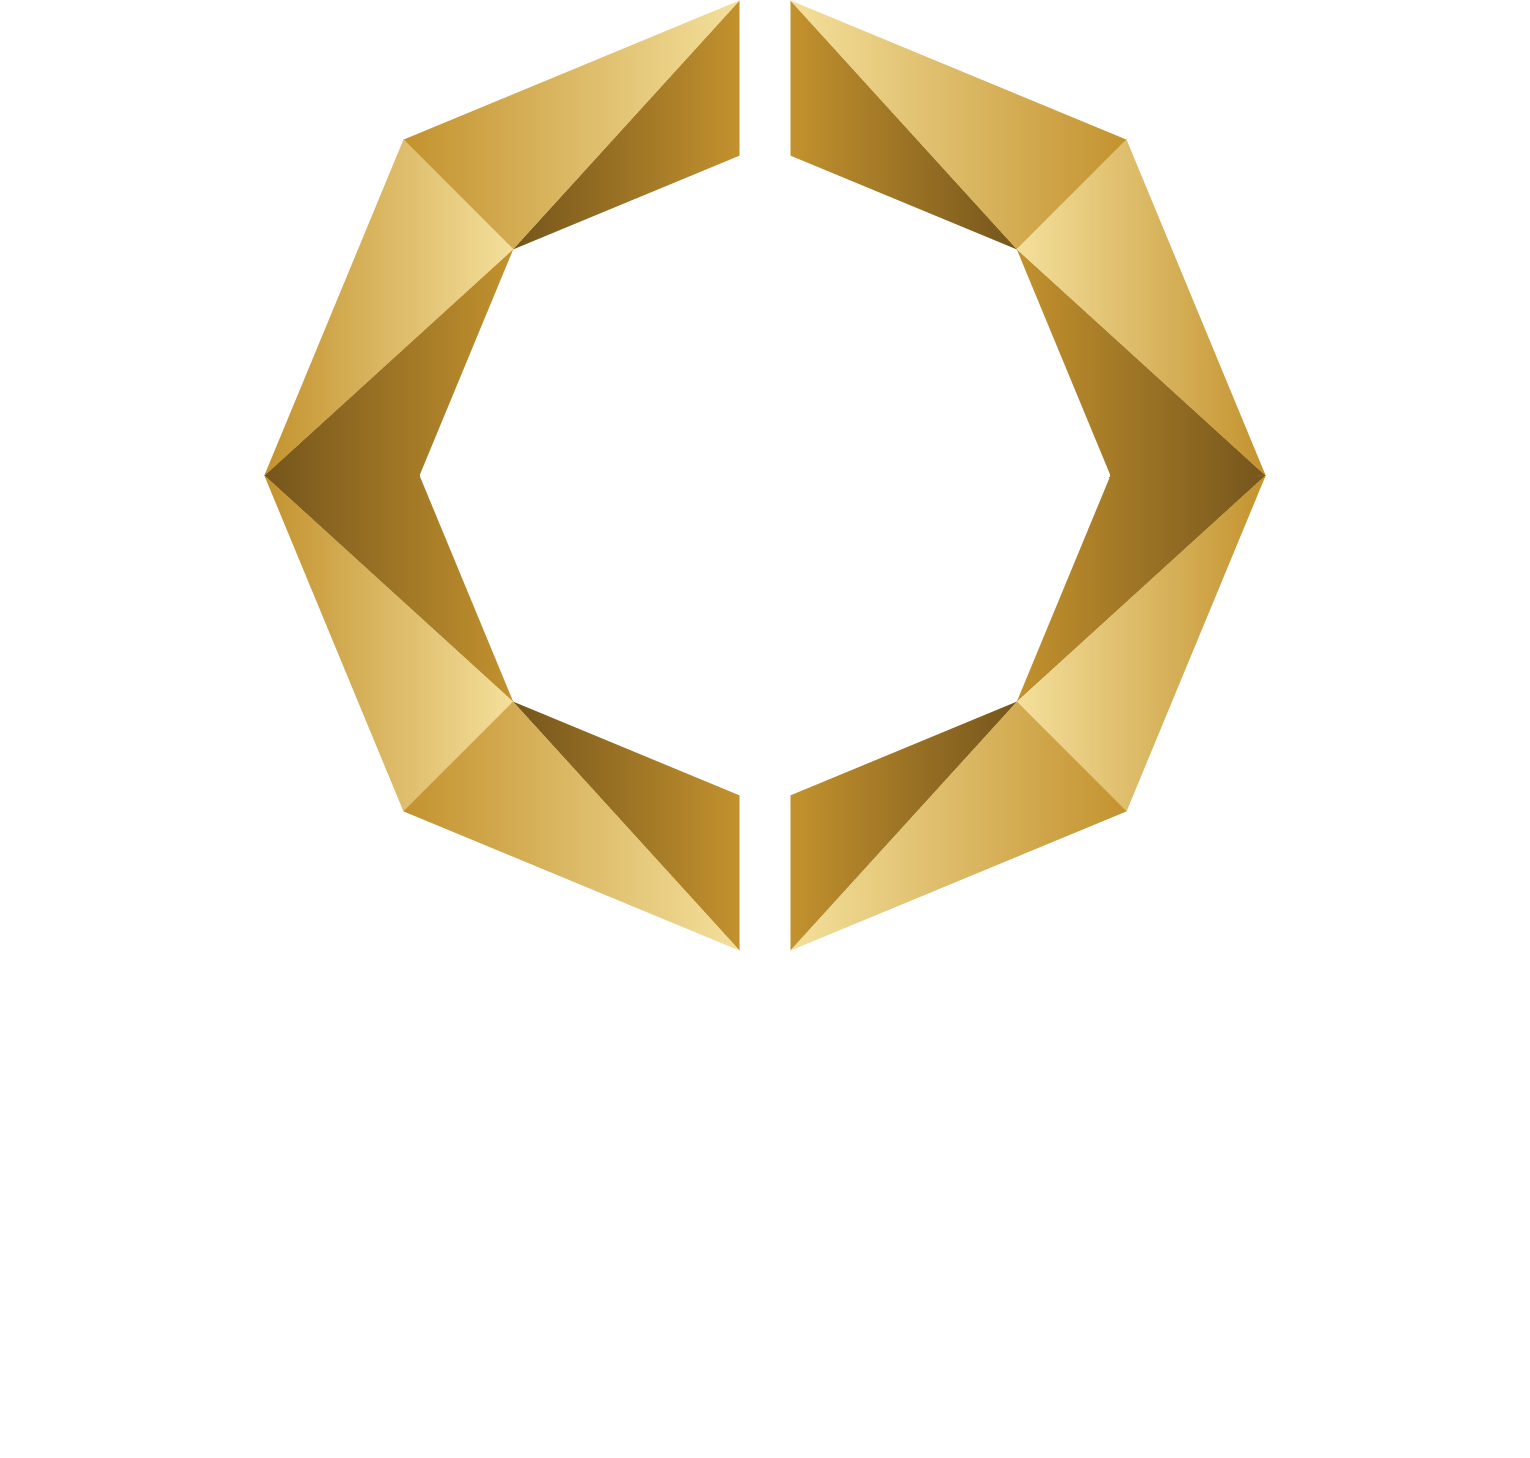 Octava Minerals Limited